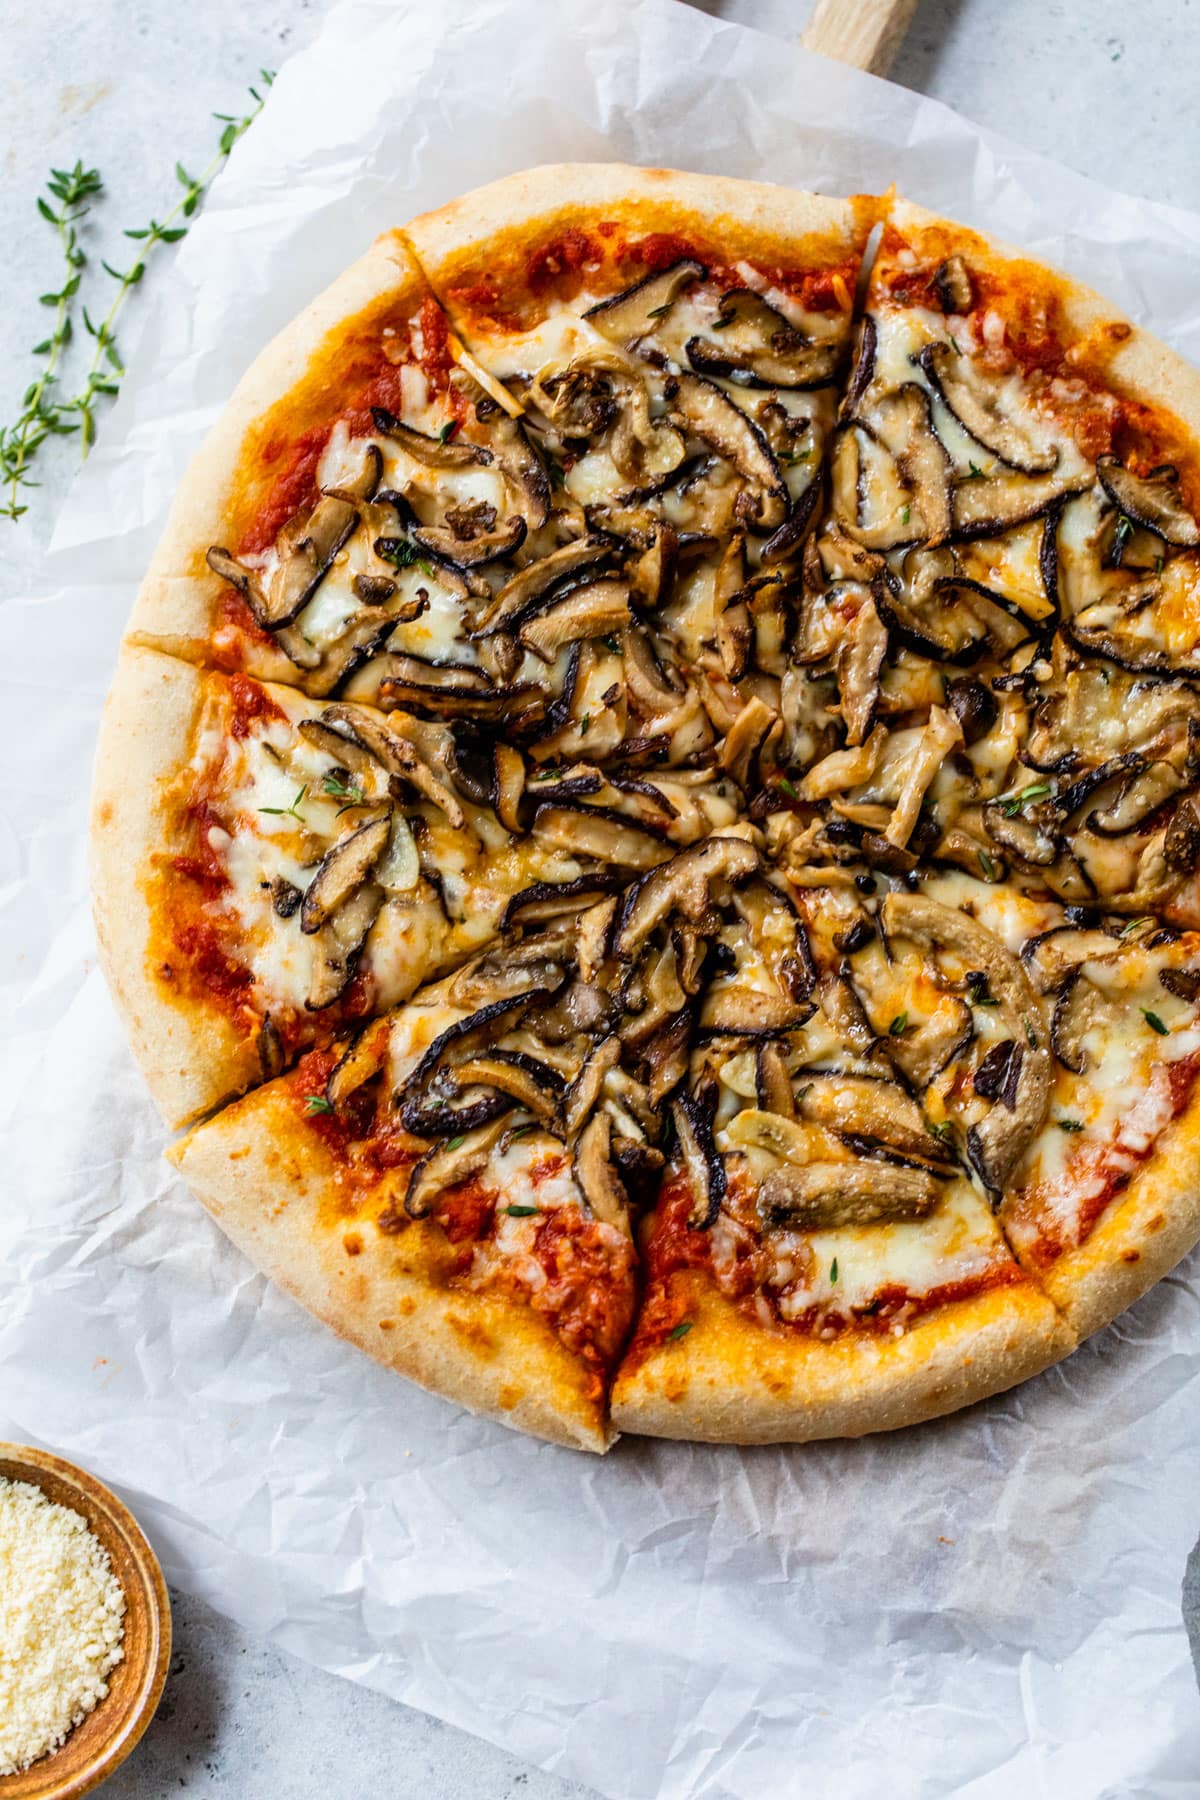 Mushroom Pizza: A Delight for Mushroom Lovers